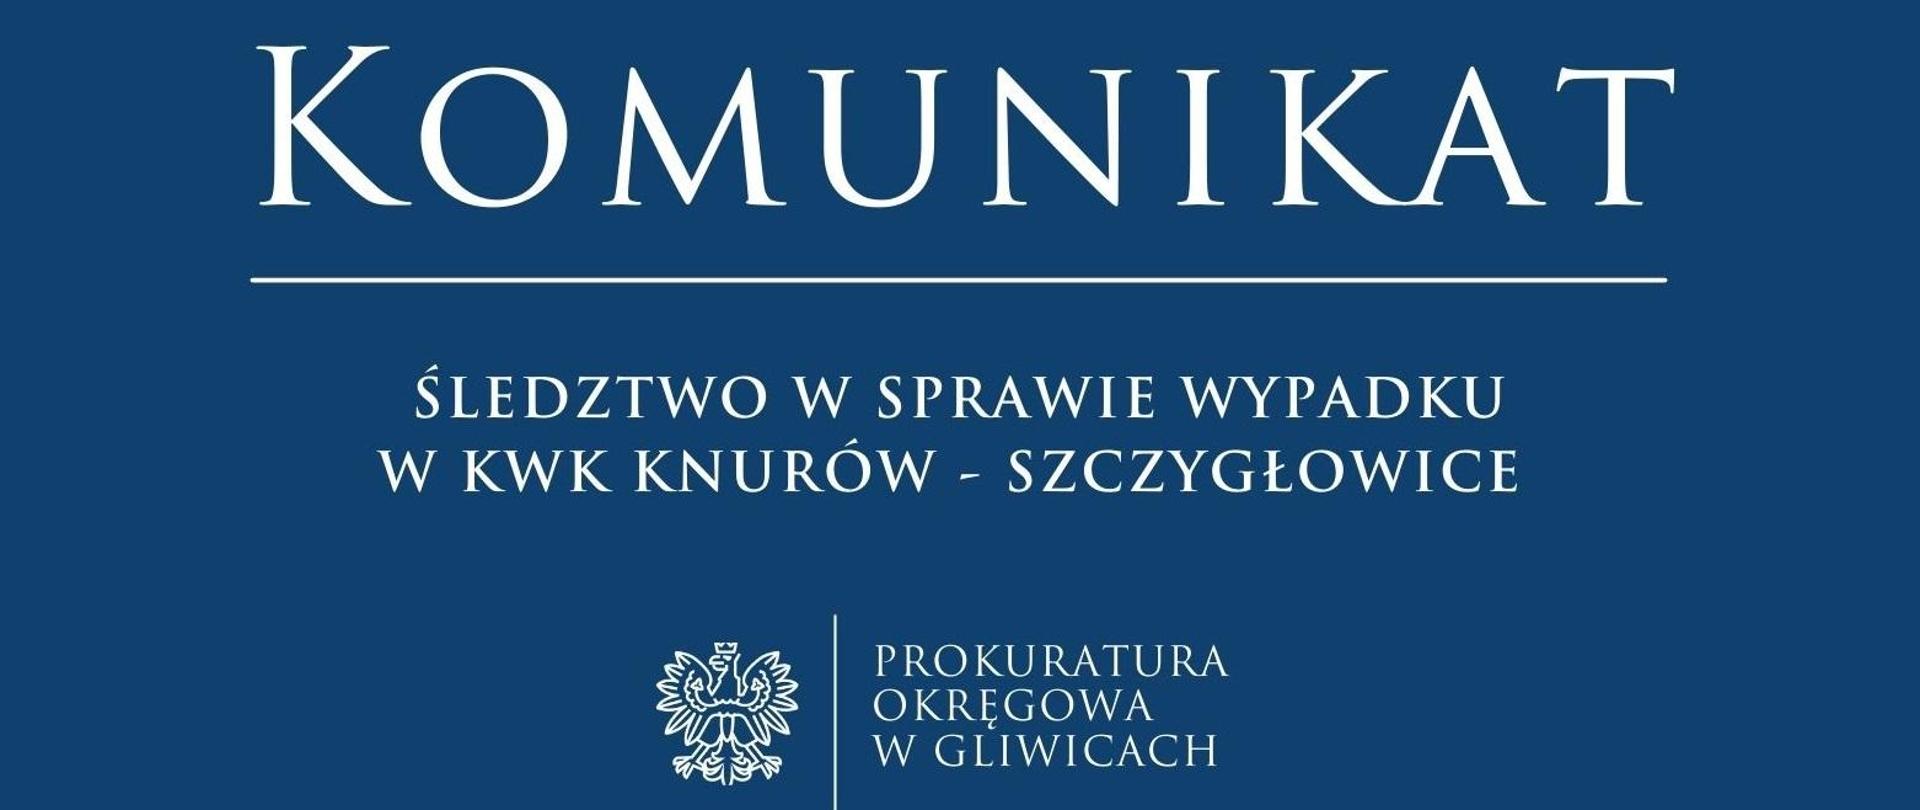 Śledztwo w sprawie wypadku w KWK Knurów – Szczygłowice